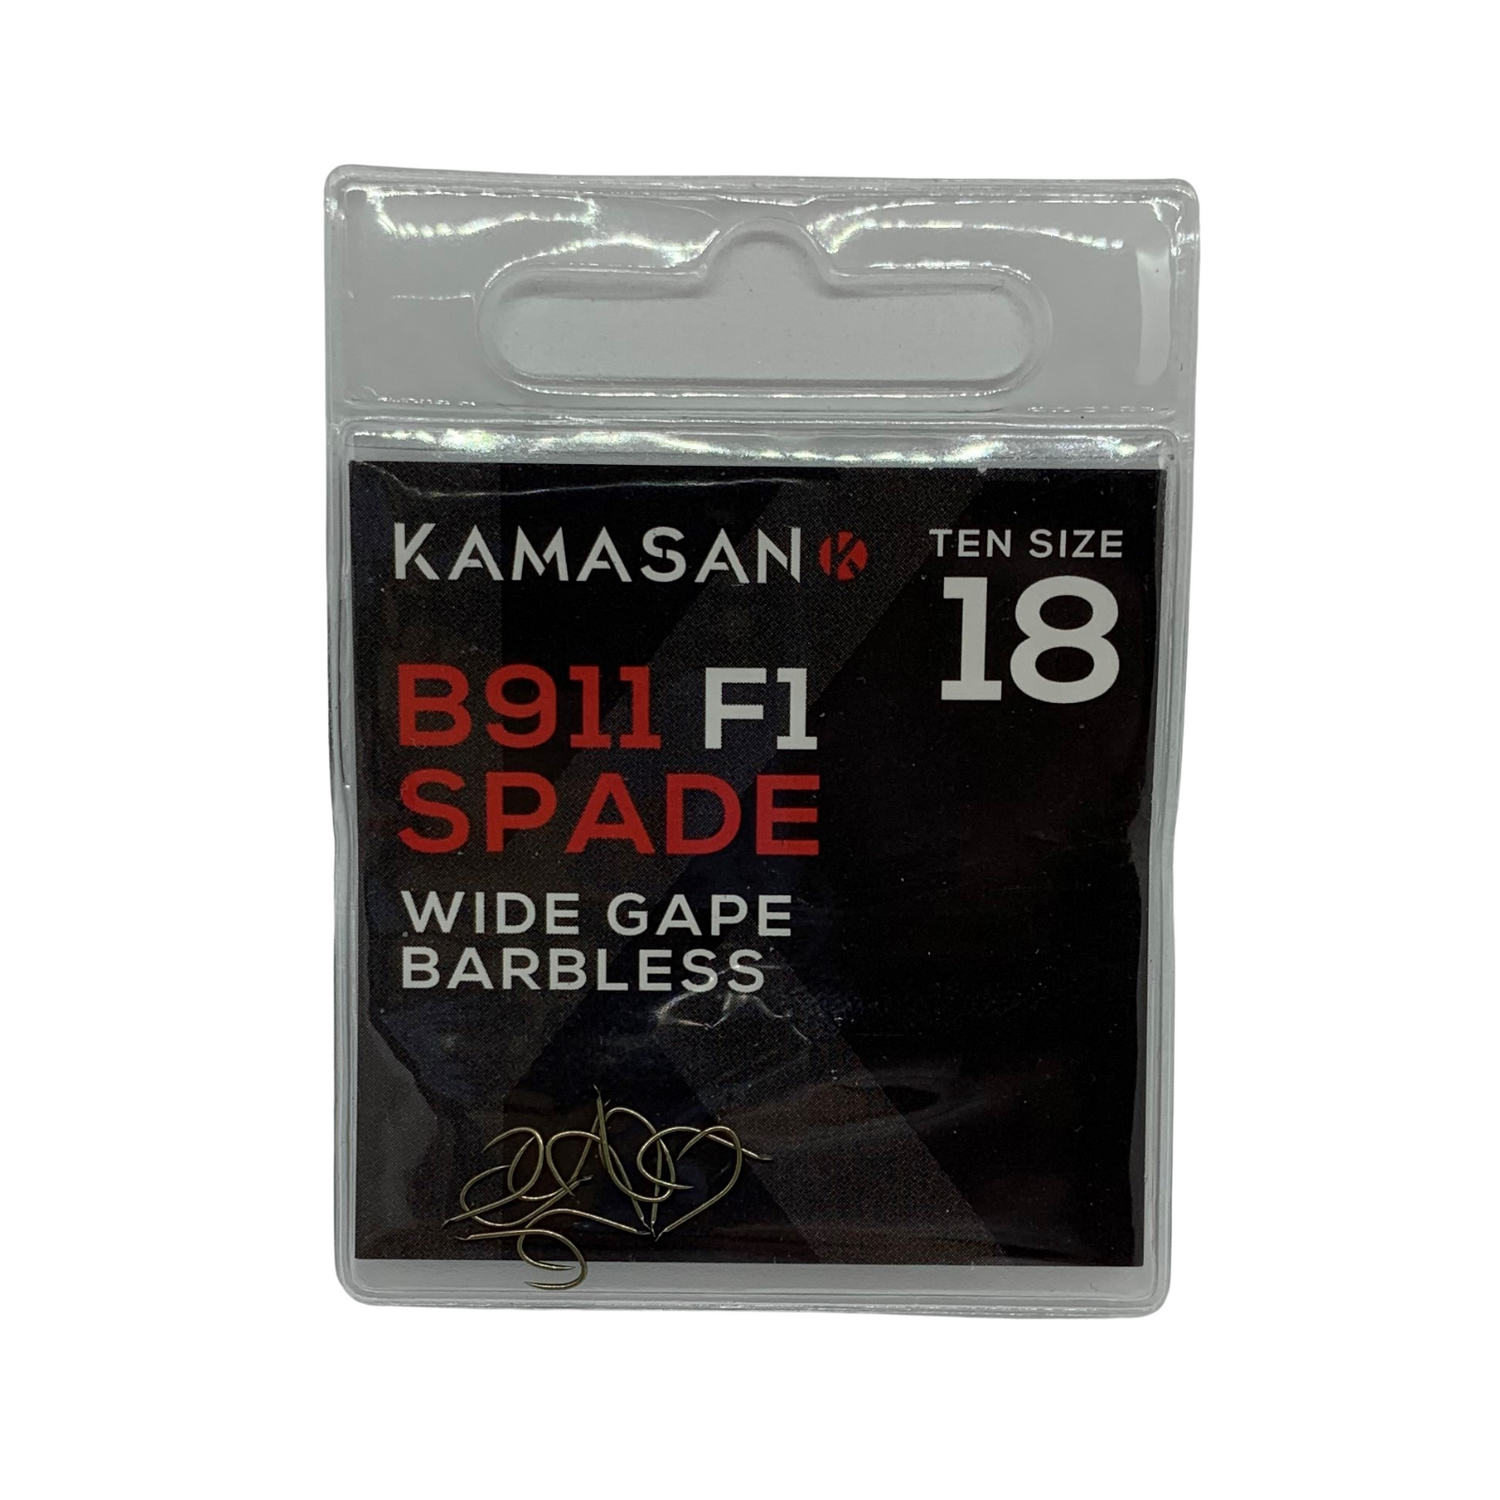 Kamasan B911 F1 Spade End Hooks - Size 18